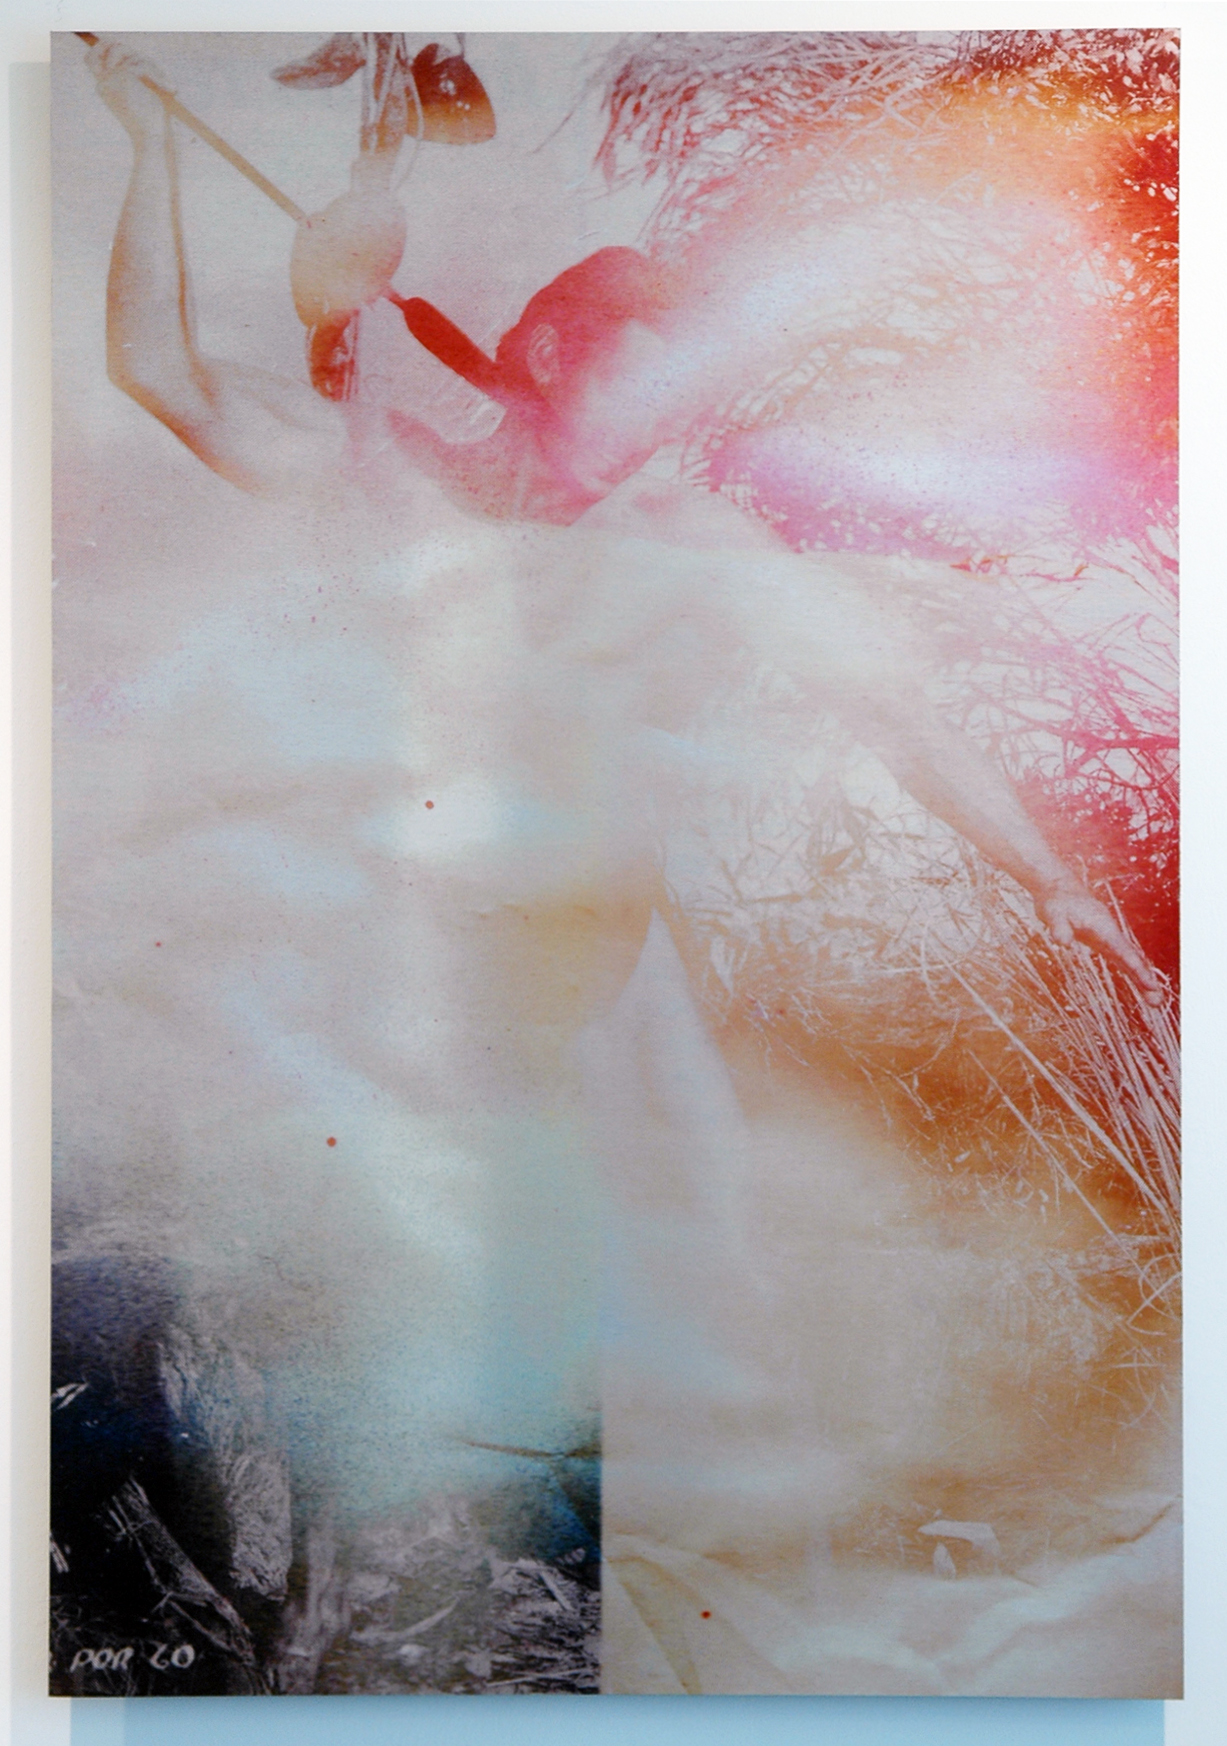   DERIC CARNER   Gordon I , pigment print on aluminum, unique, 45" x 30", 2012 